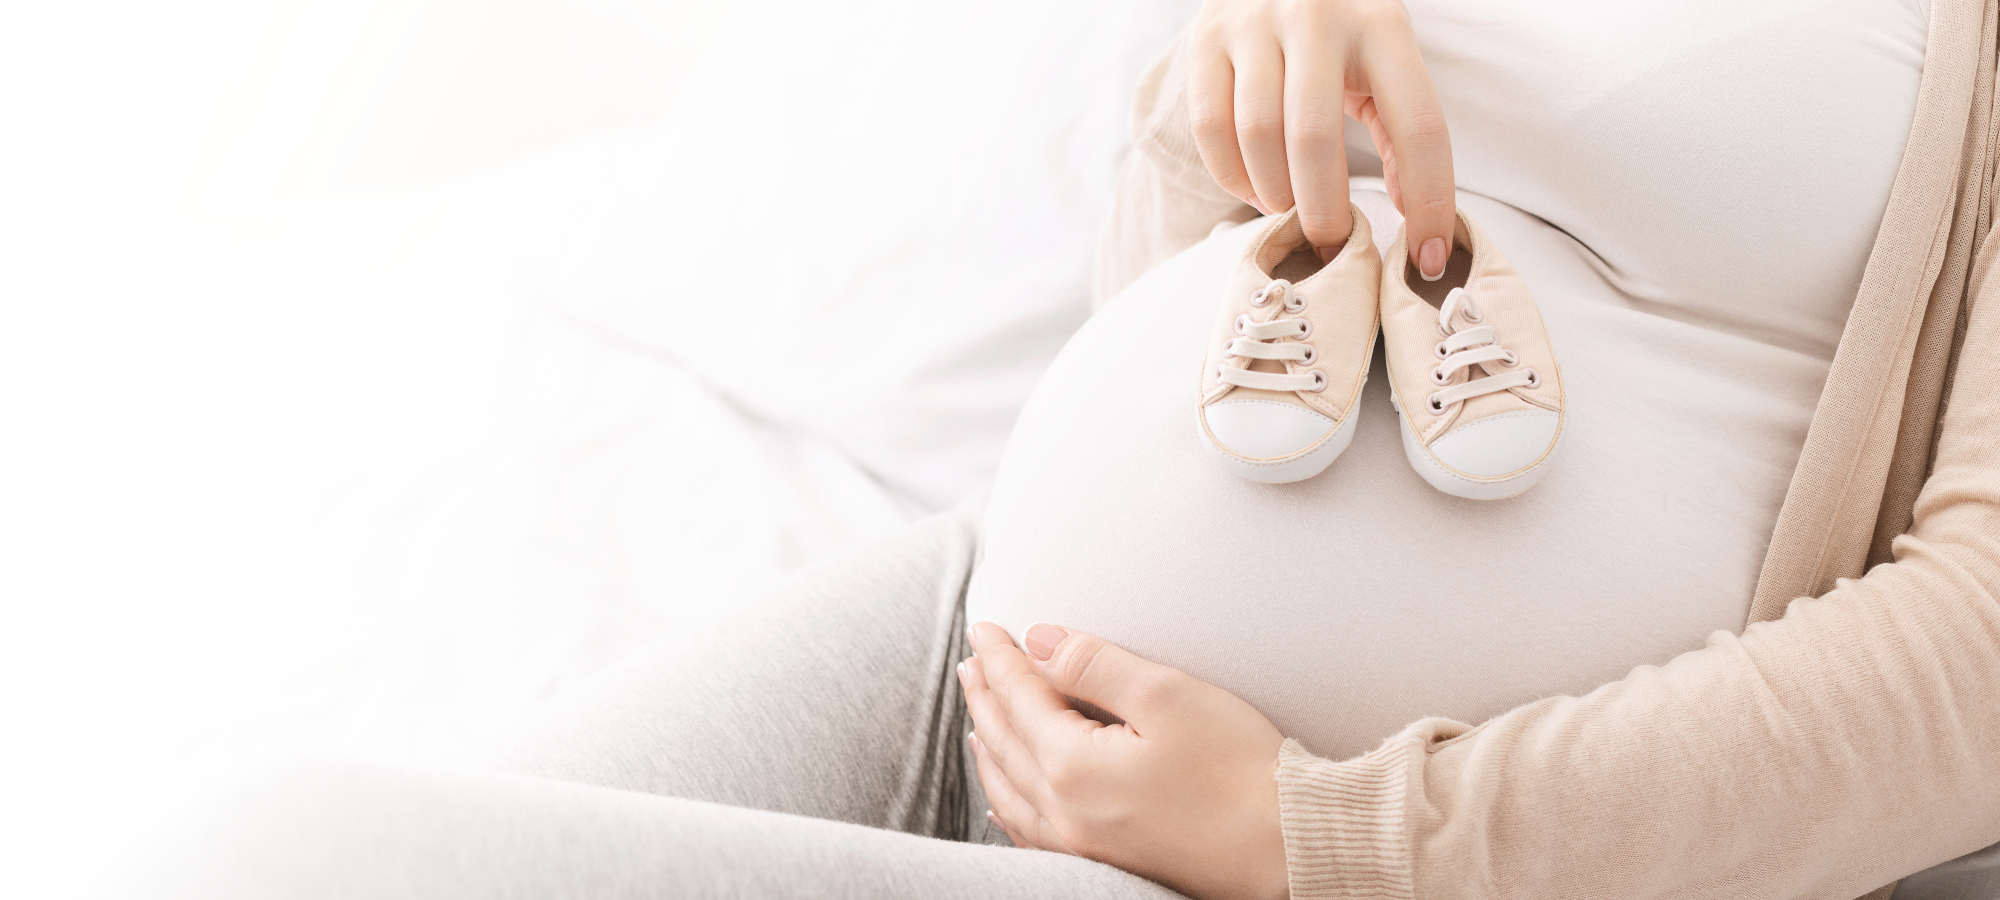 مقابله با اضطراب و افسردگی در دوران بارداری- ززیتو